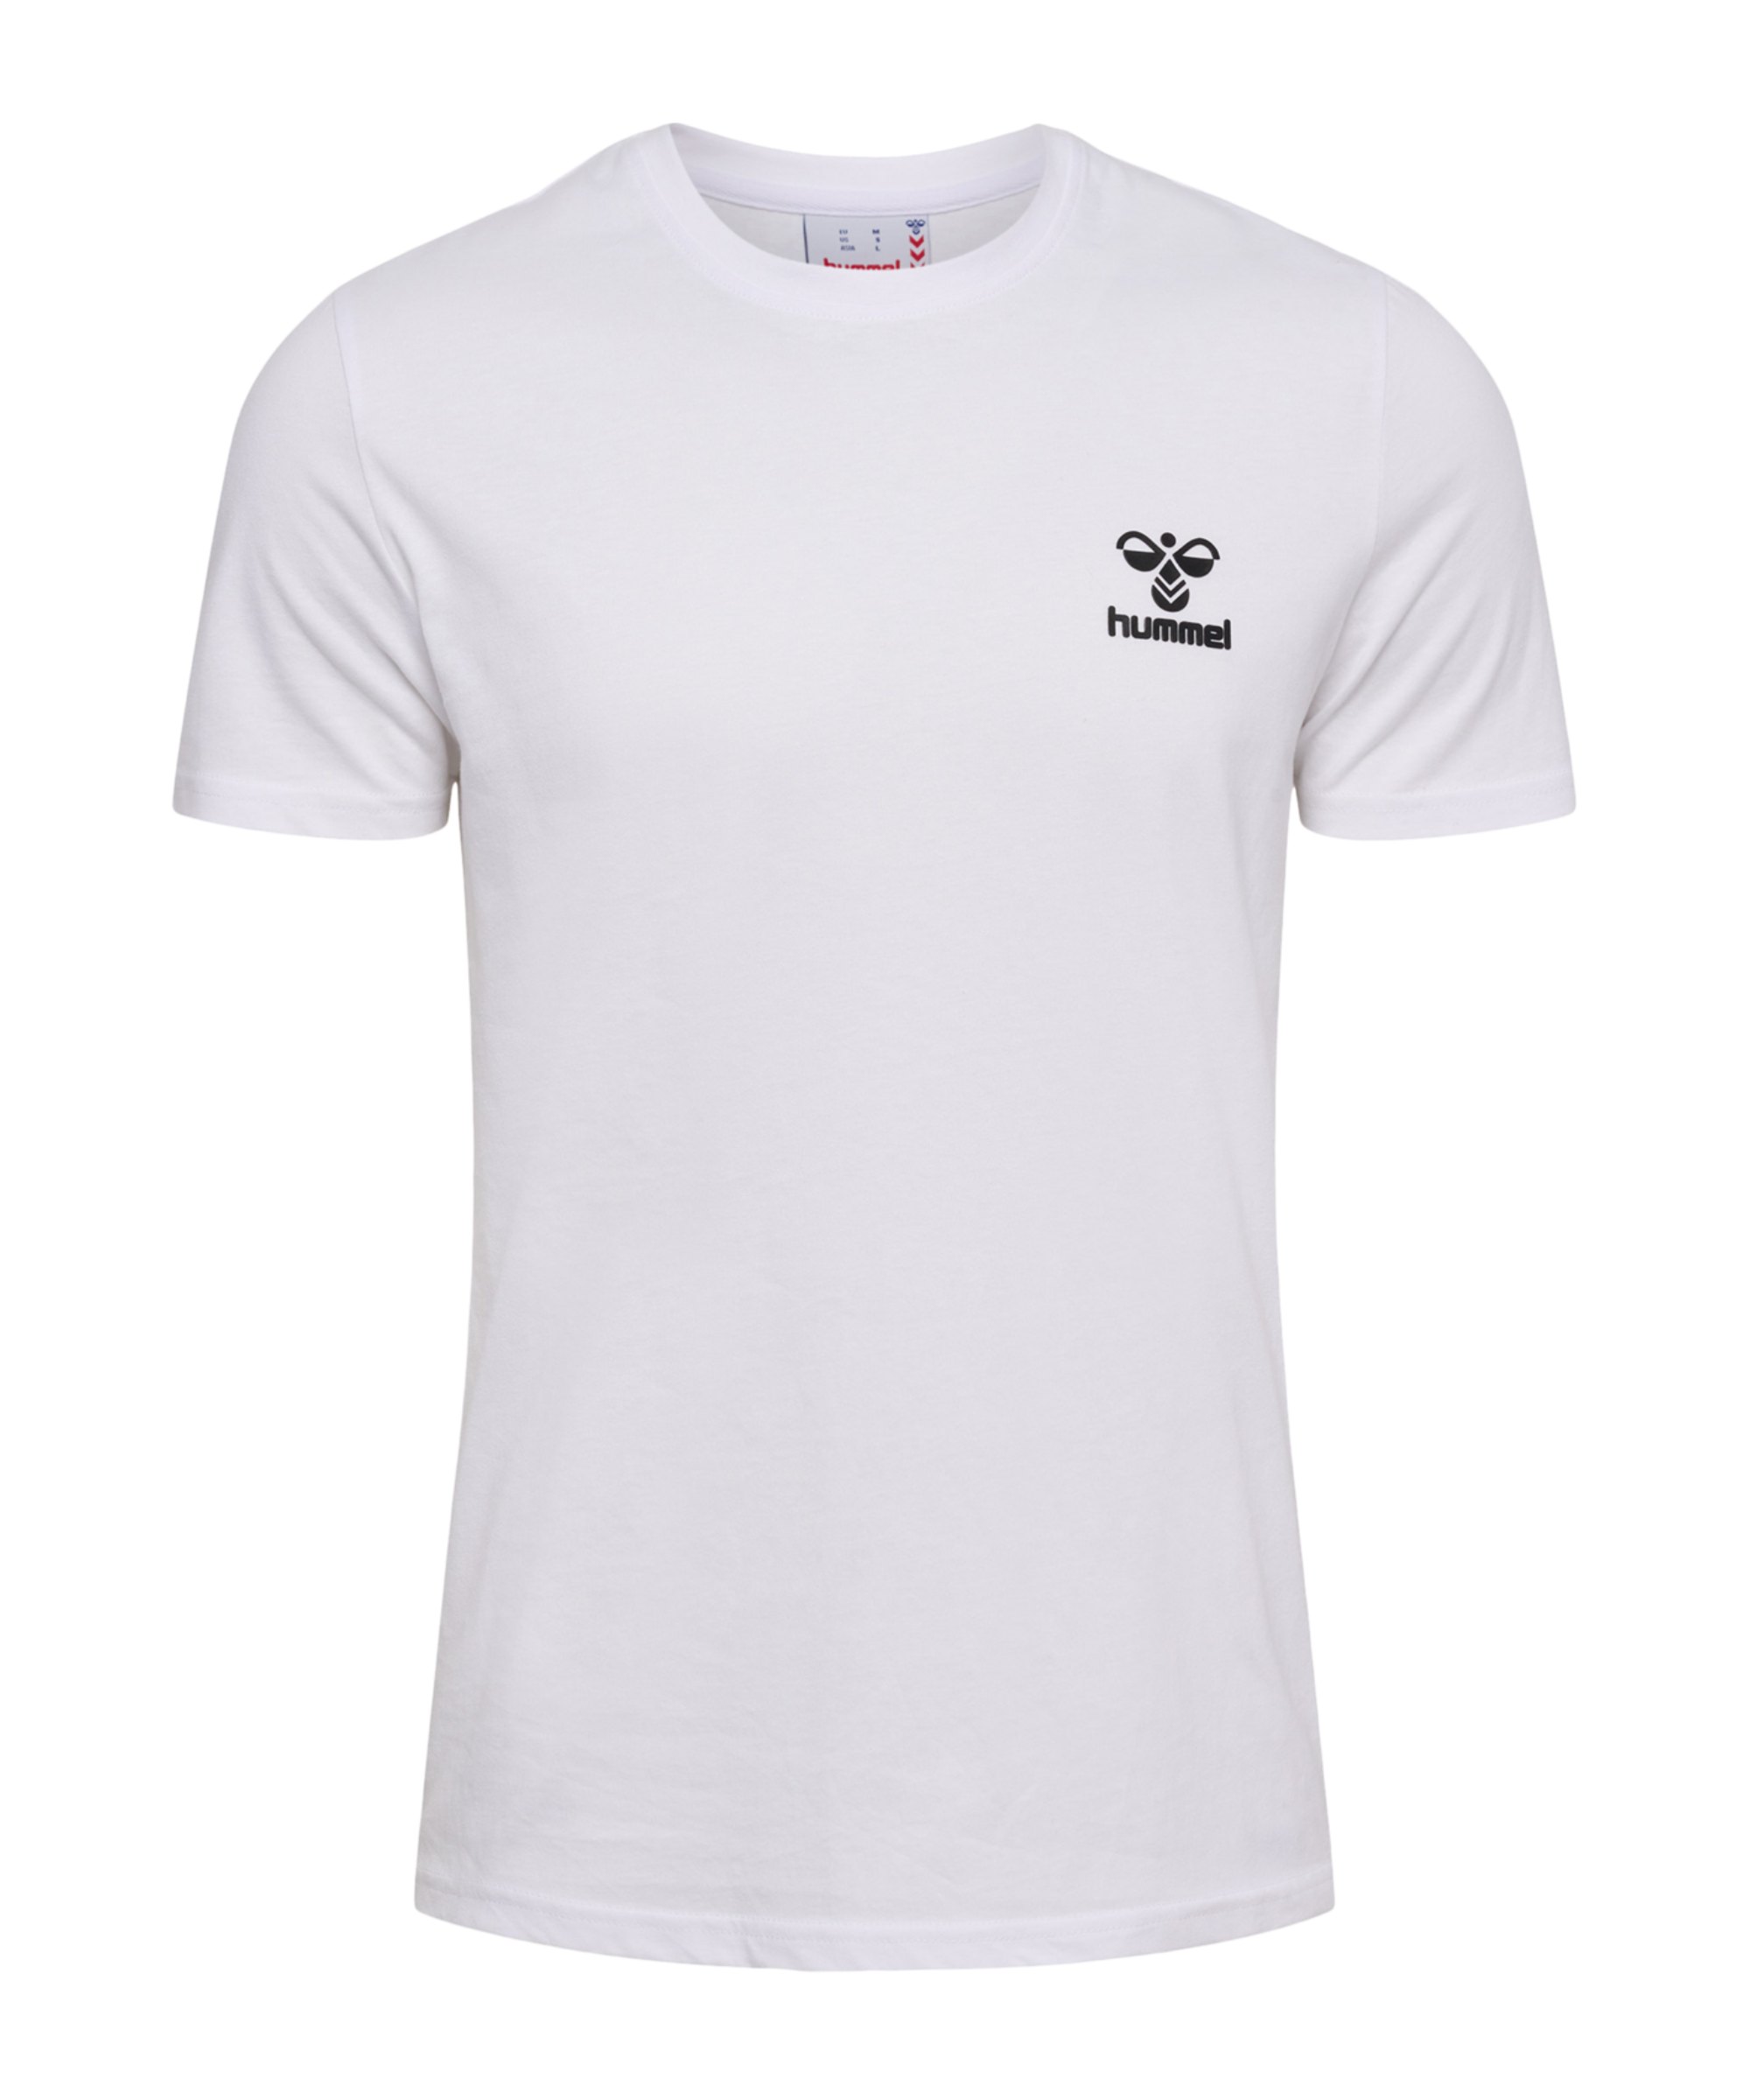 hmllCONS Weiss T-Shirt weiss Hummel